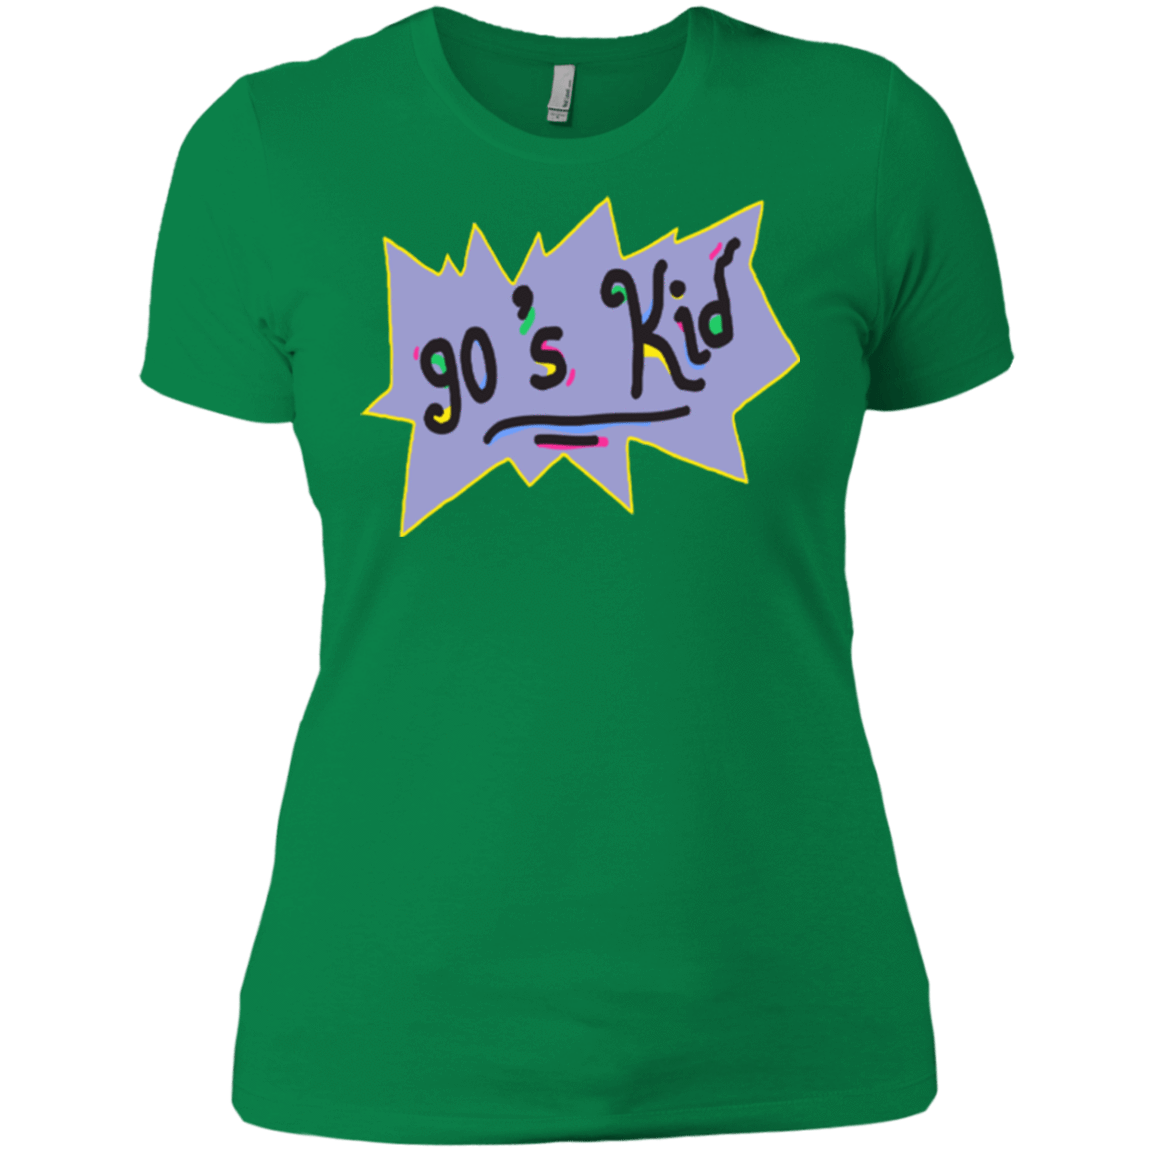 T-Shirts Kelly Green / X-Small 90's Kid Women's Premium T-Shirt